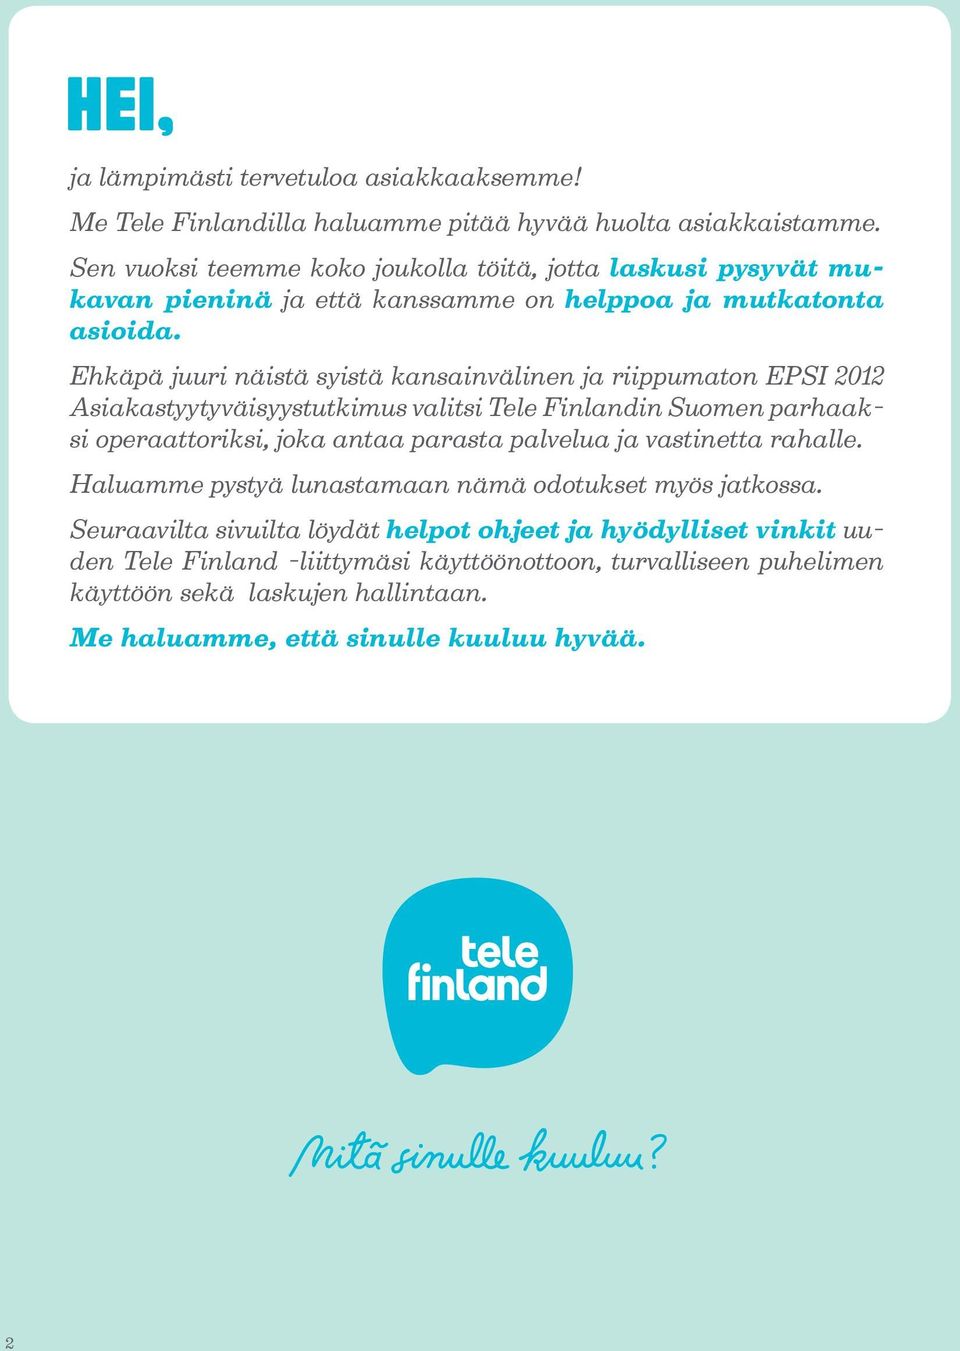 Ehkäpä juuri näistä syistä kansainvälinen ja riippumaton EPSI 2012 Asiakastyytyväisyystutkimus valitsi Tele Finlandin Suomen parhaaksi operaattoriksi, joka antaa parasta